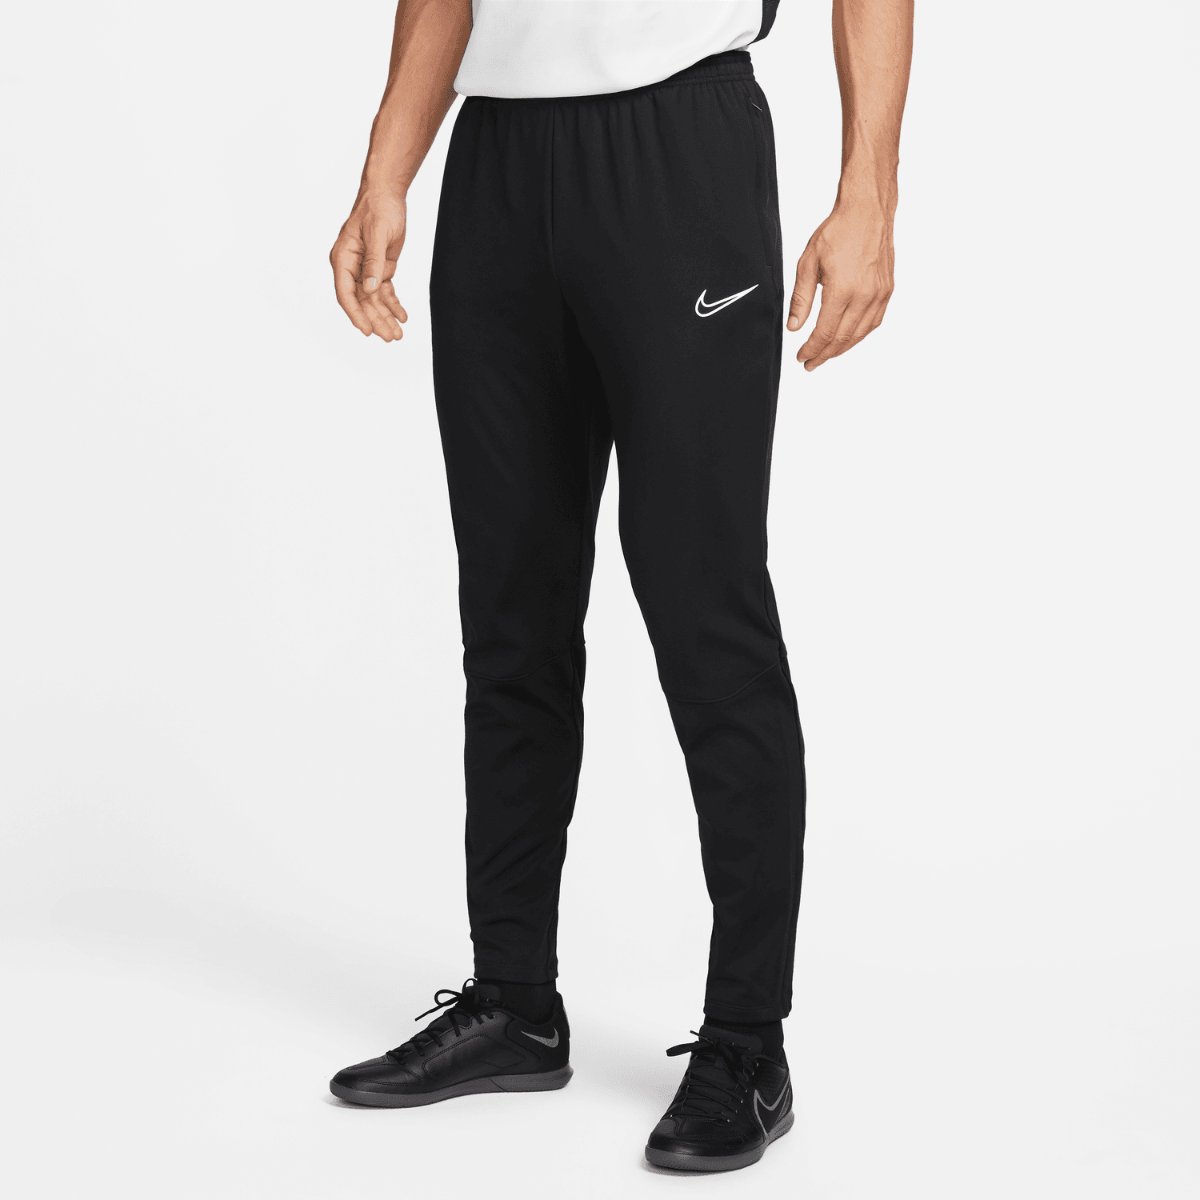 Hose Nike Therma-Fit Academy – Schwarz/Weiß